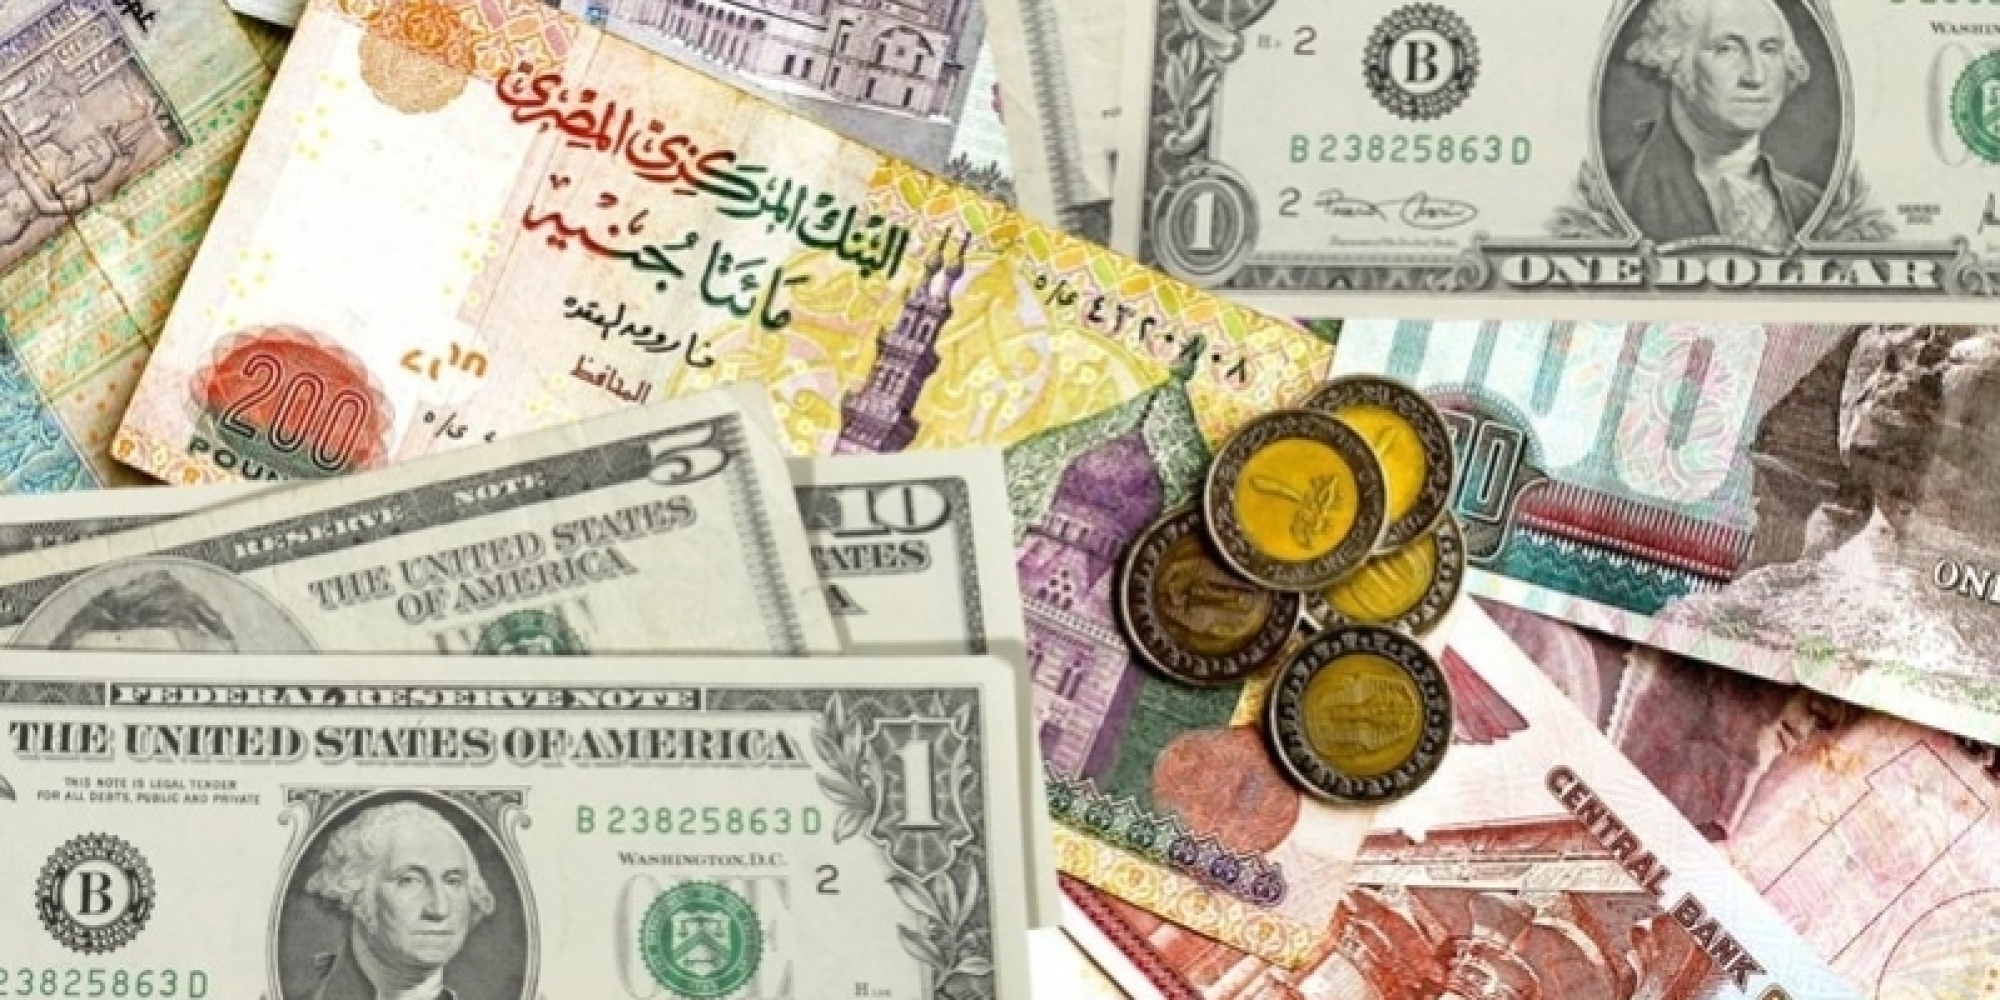   أسعار العملات الأجنبية مقابل الجنية المصرى اليوم 18 /1 / 2020